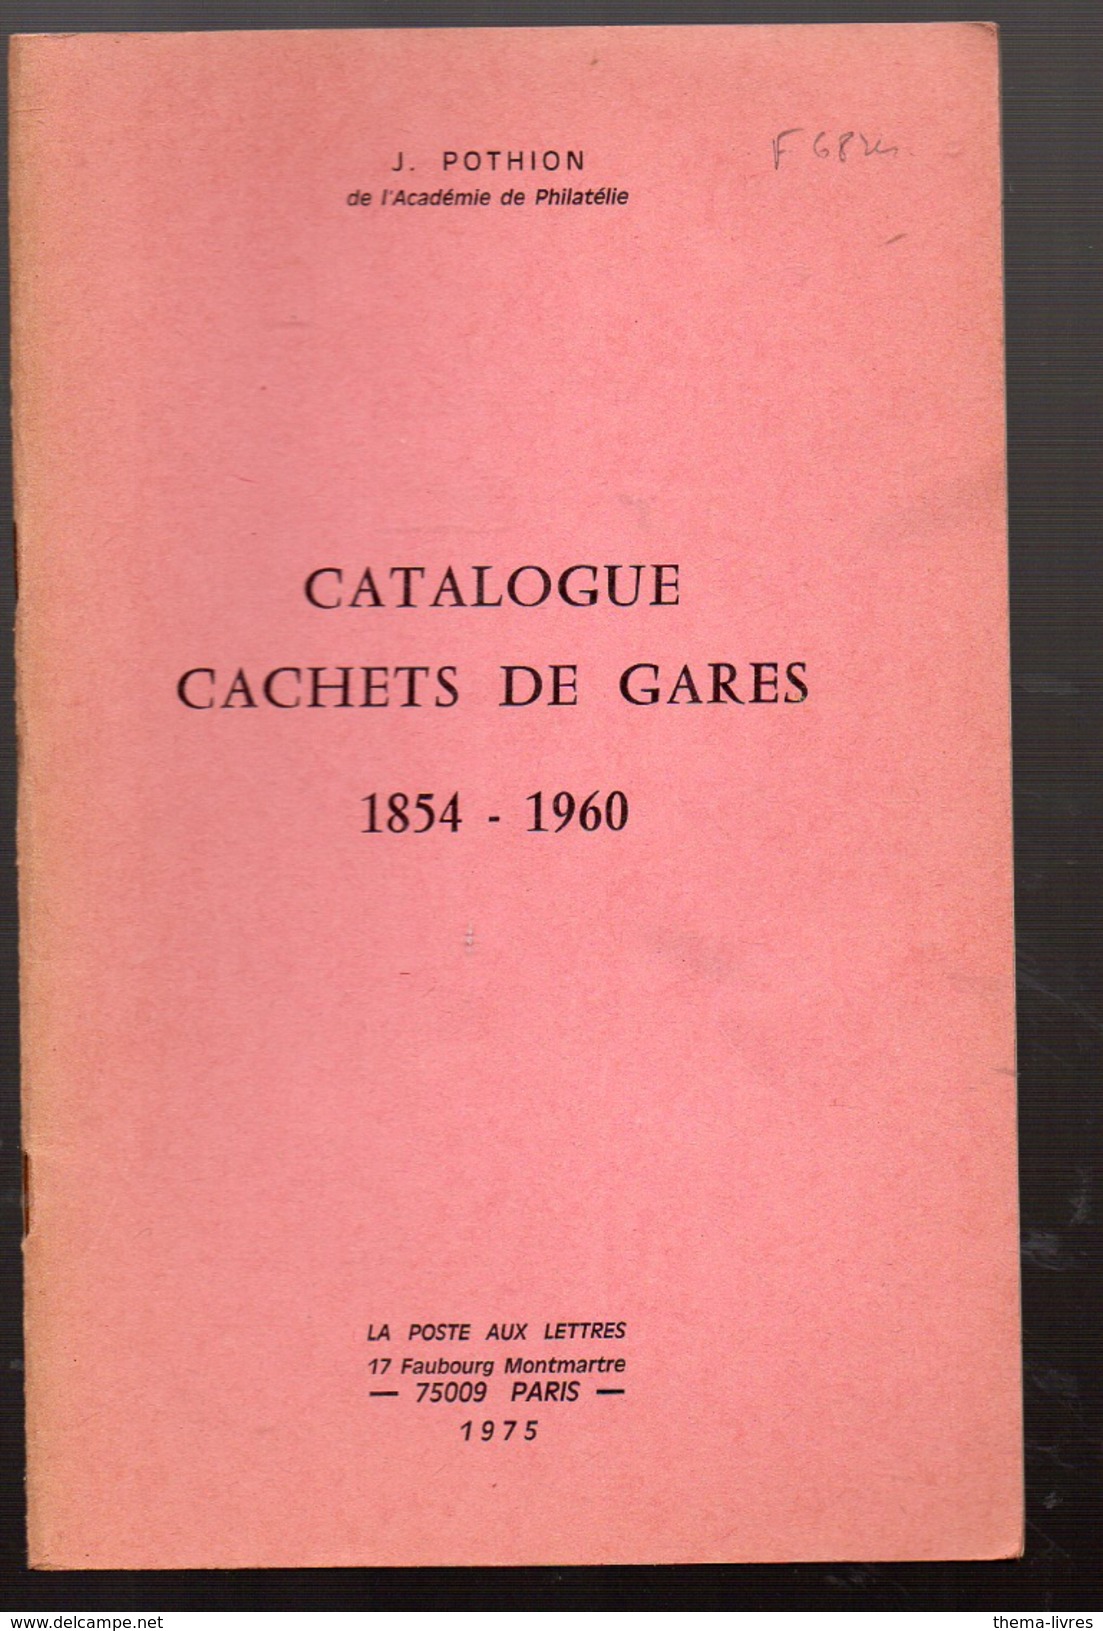 J POTHION Catalogue Cachets De Gare 1854-1960 (M4178) - Frankrijk